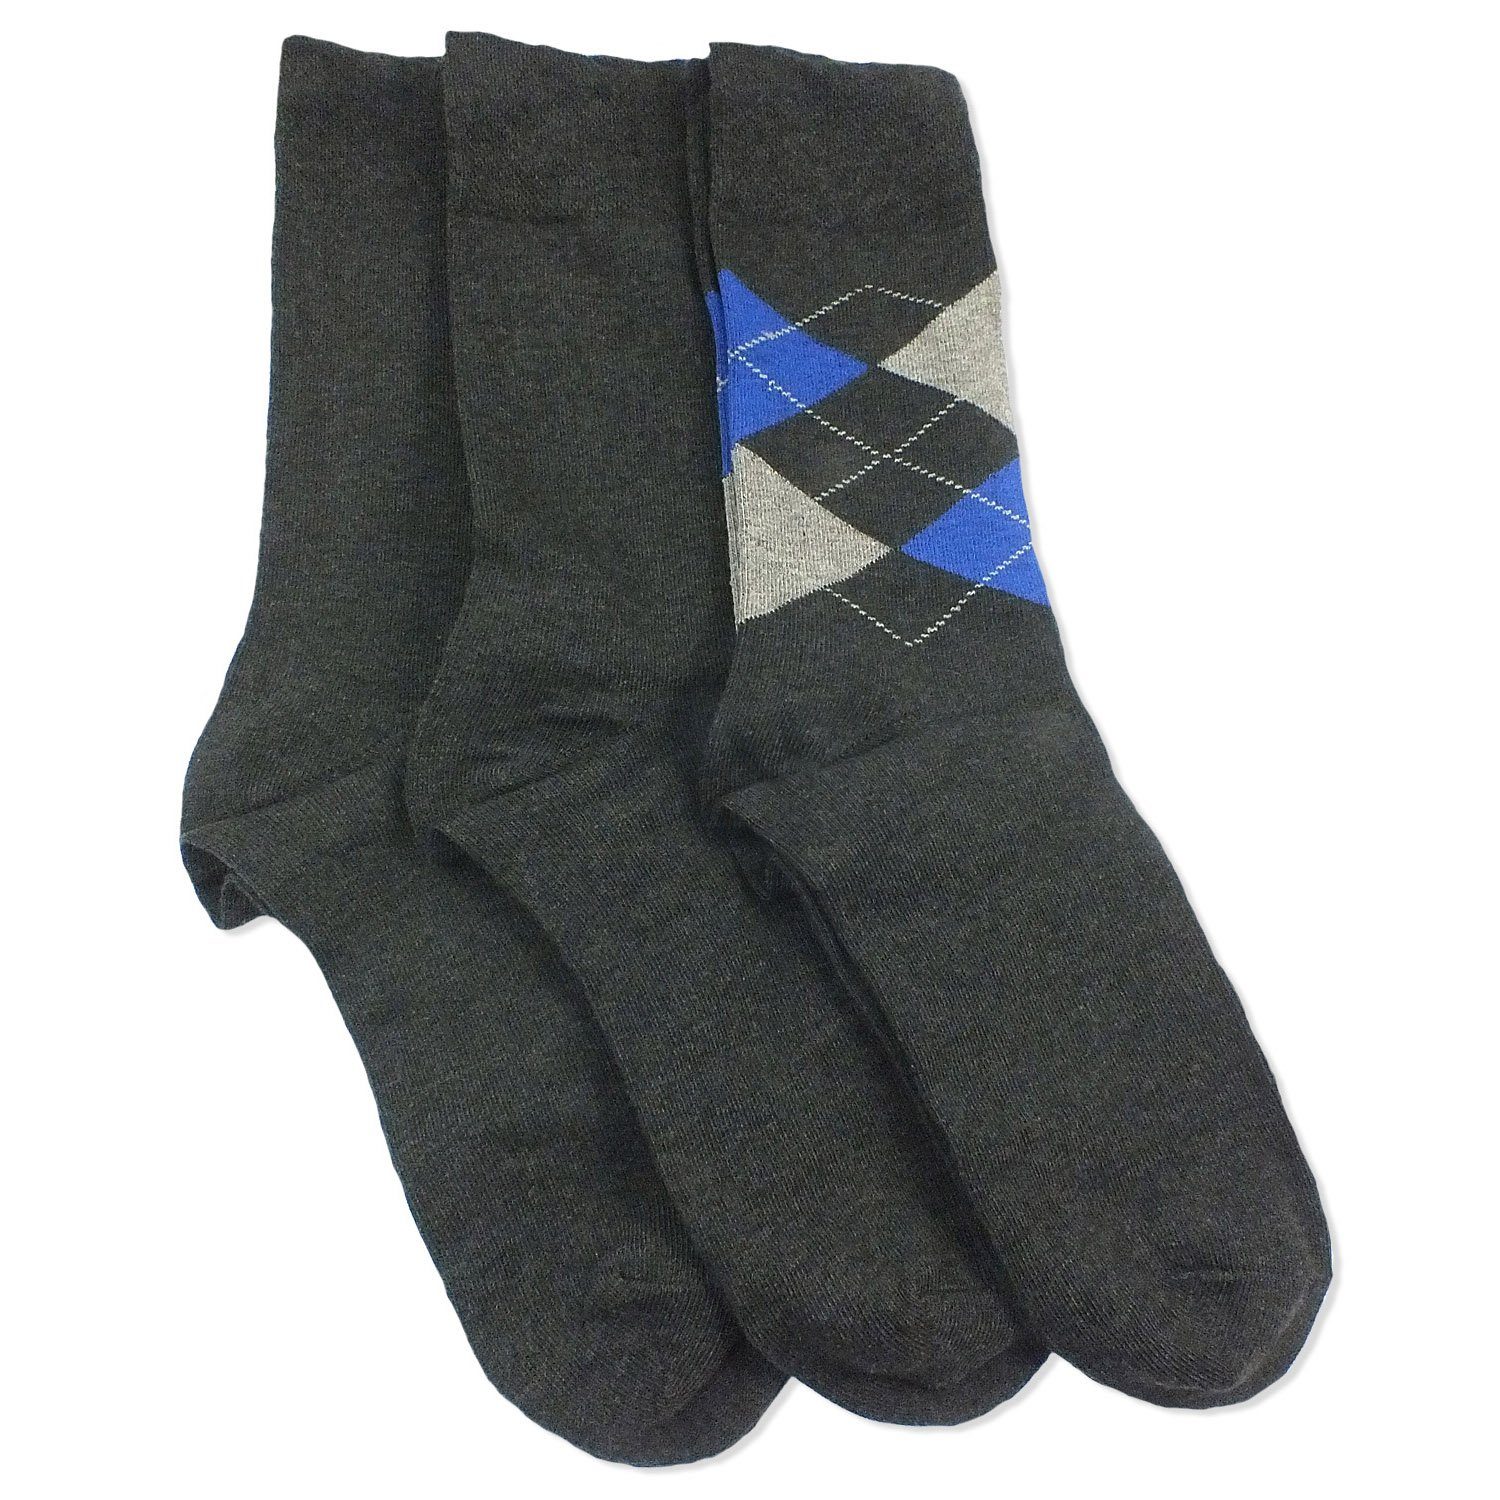 Herren Paar) Socken Baumwolle Geschenkverpackung Unisex Camano (Packung, CA4903 Damen 08 3-Paar, anthracite 3 Business Langsocken